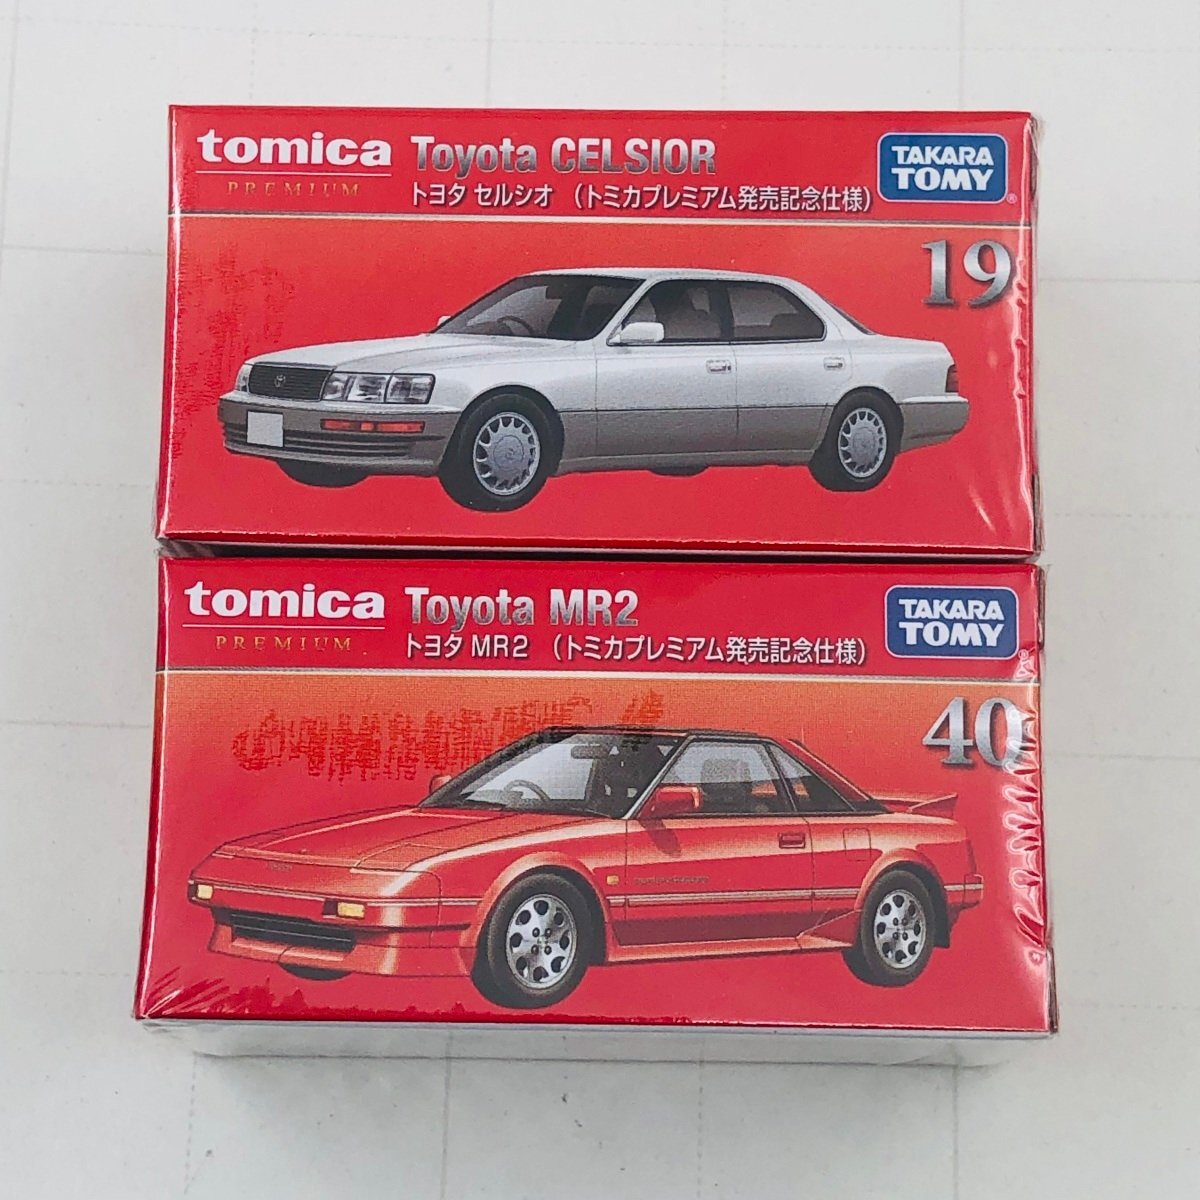 新品未開封 タカラトミー トミカ プレミアム 発売記念仕様 トヨタ MR2 セルシオ セット tomica PREMIUM Toyota MR2 CELSIORの画像1